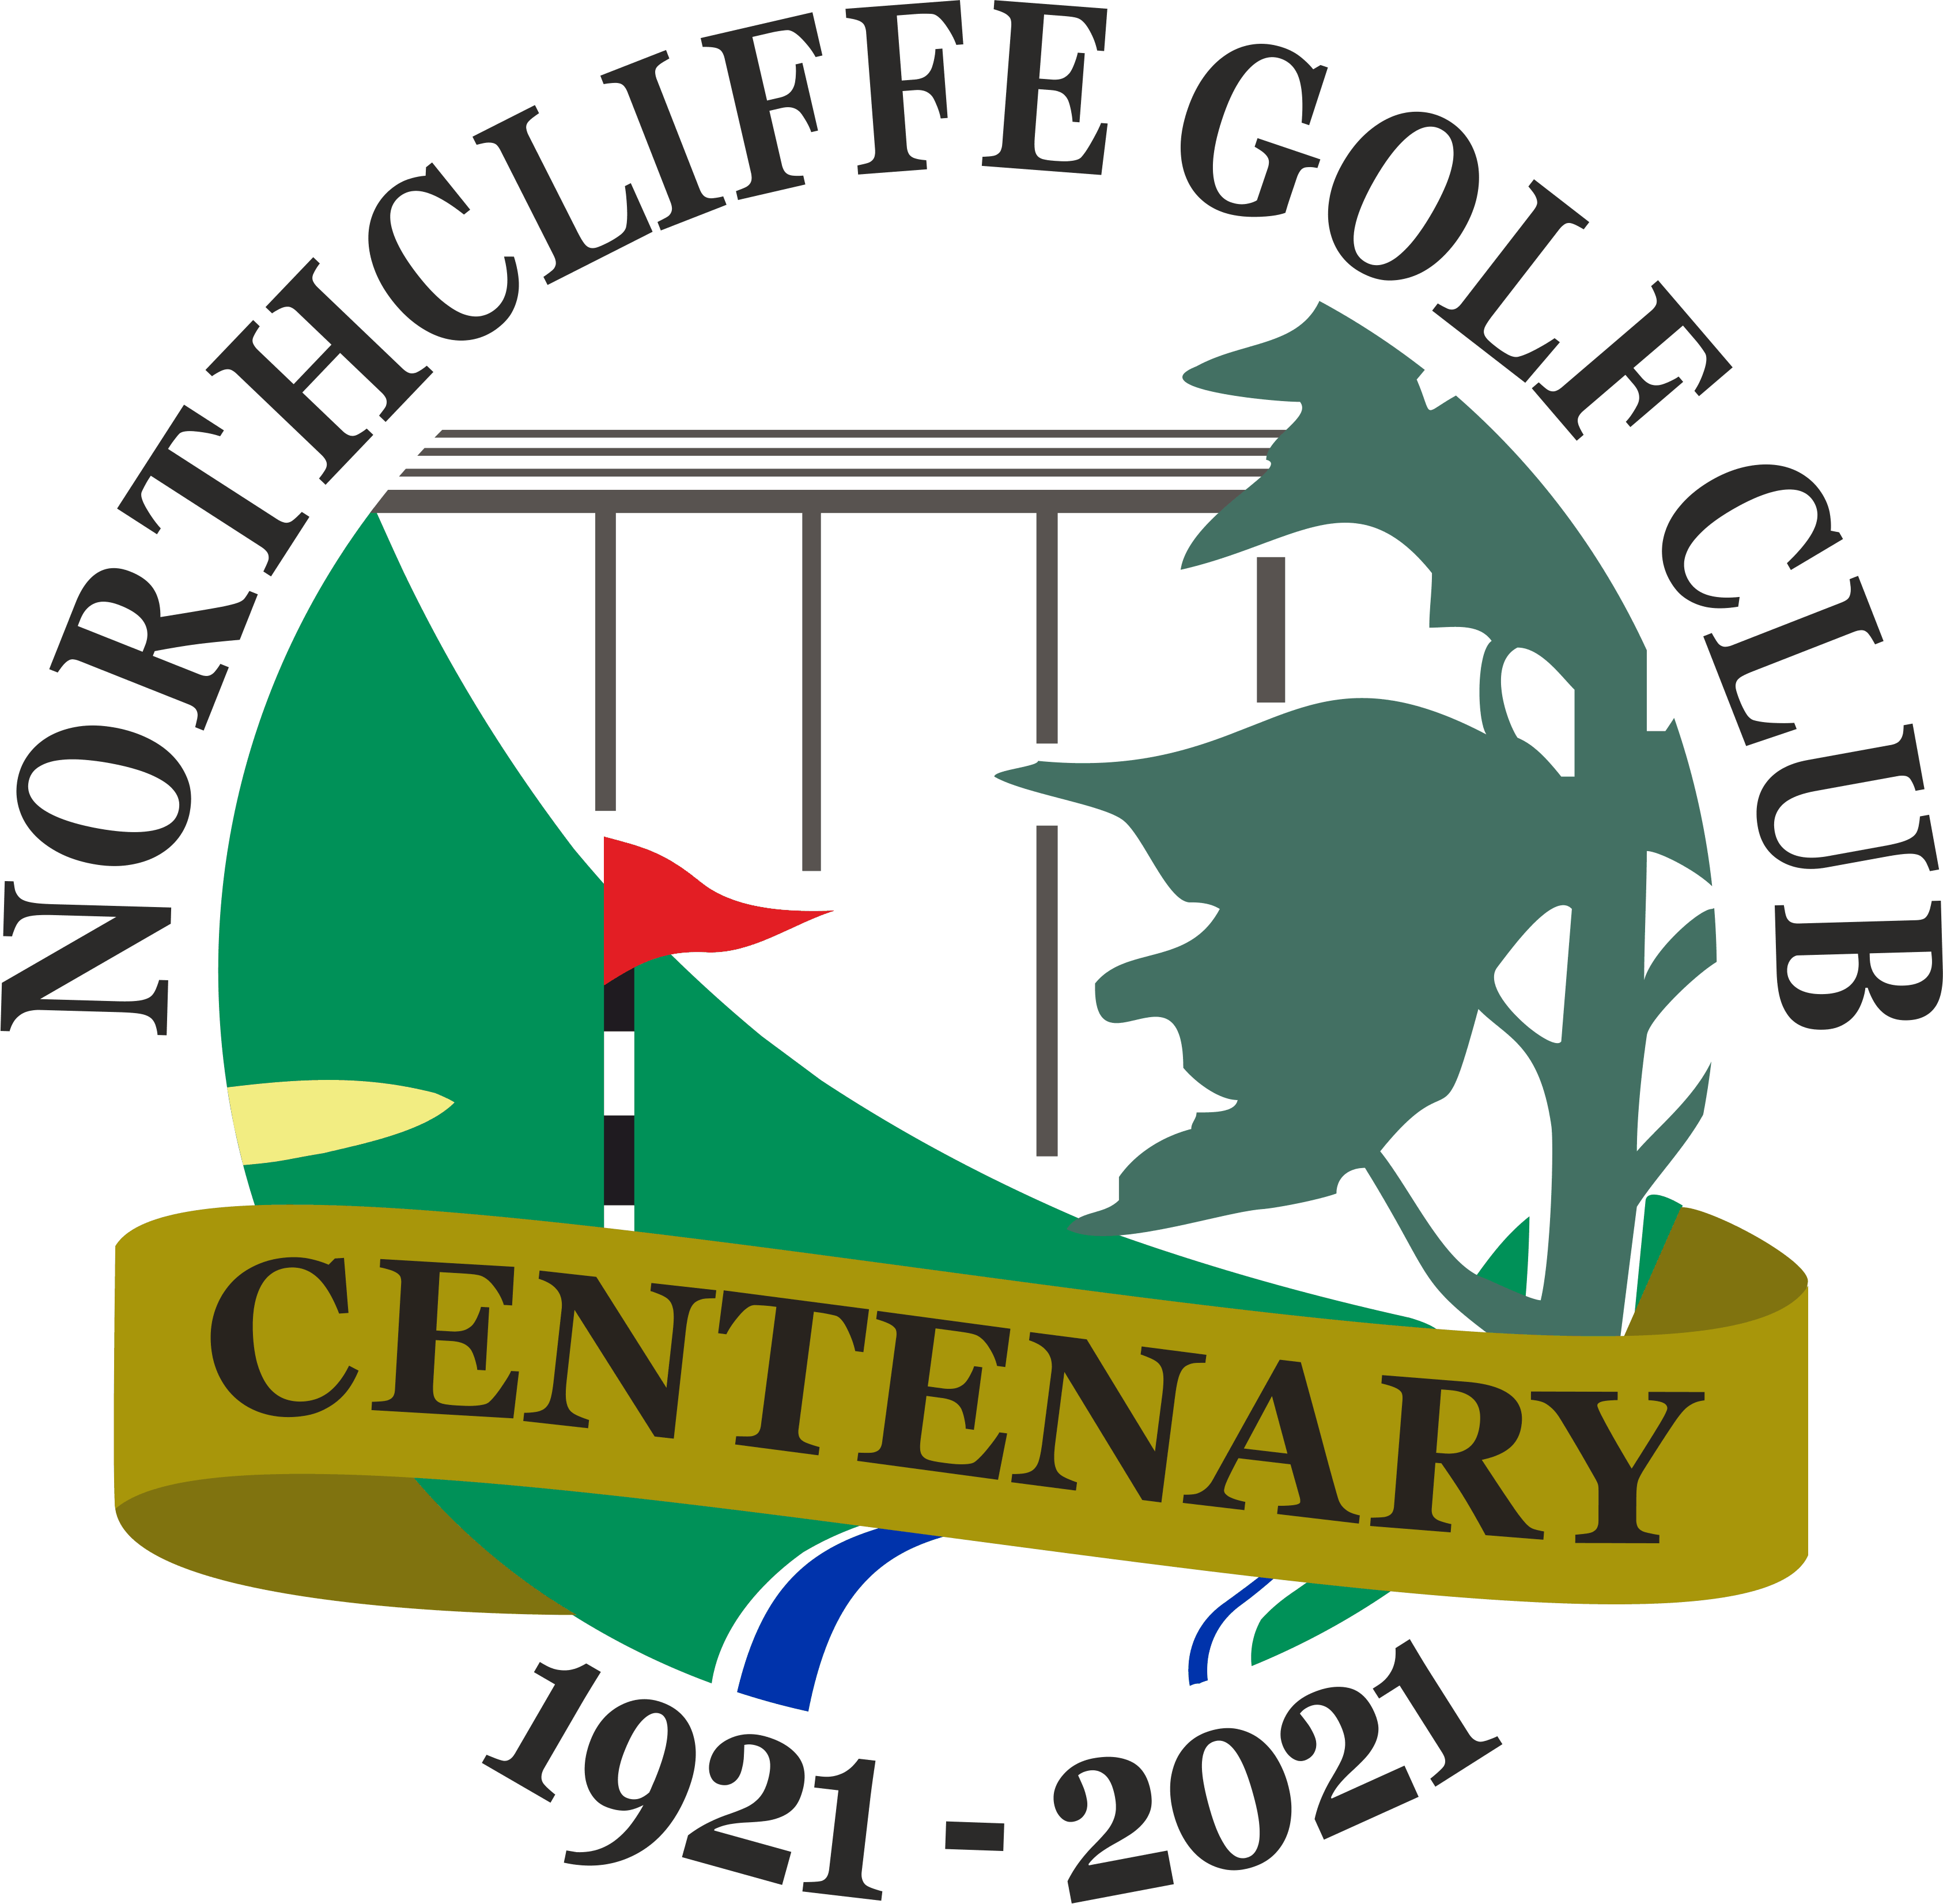 Northcliffe Golf Club